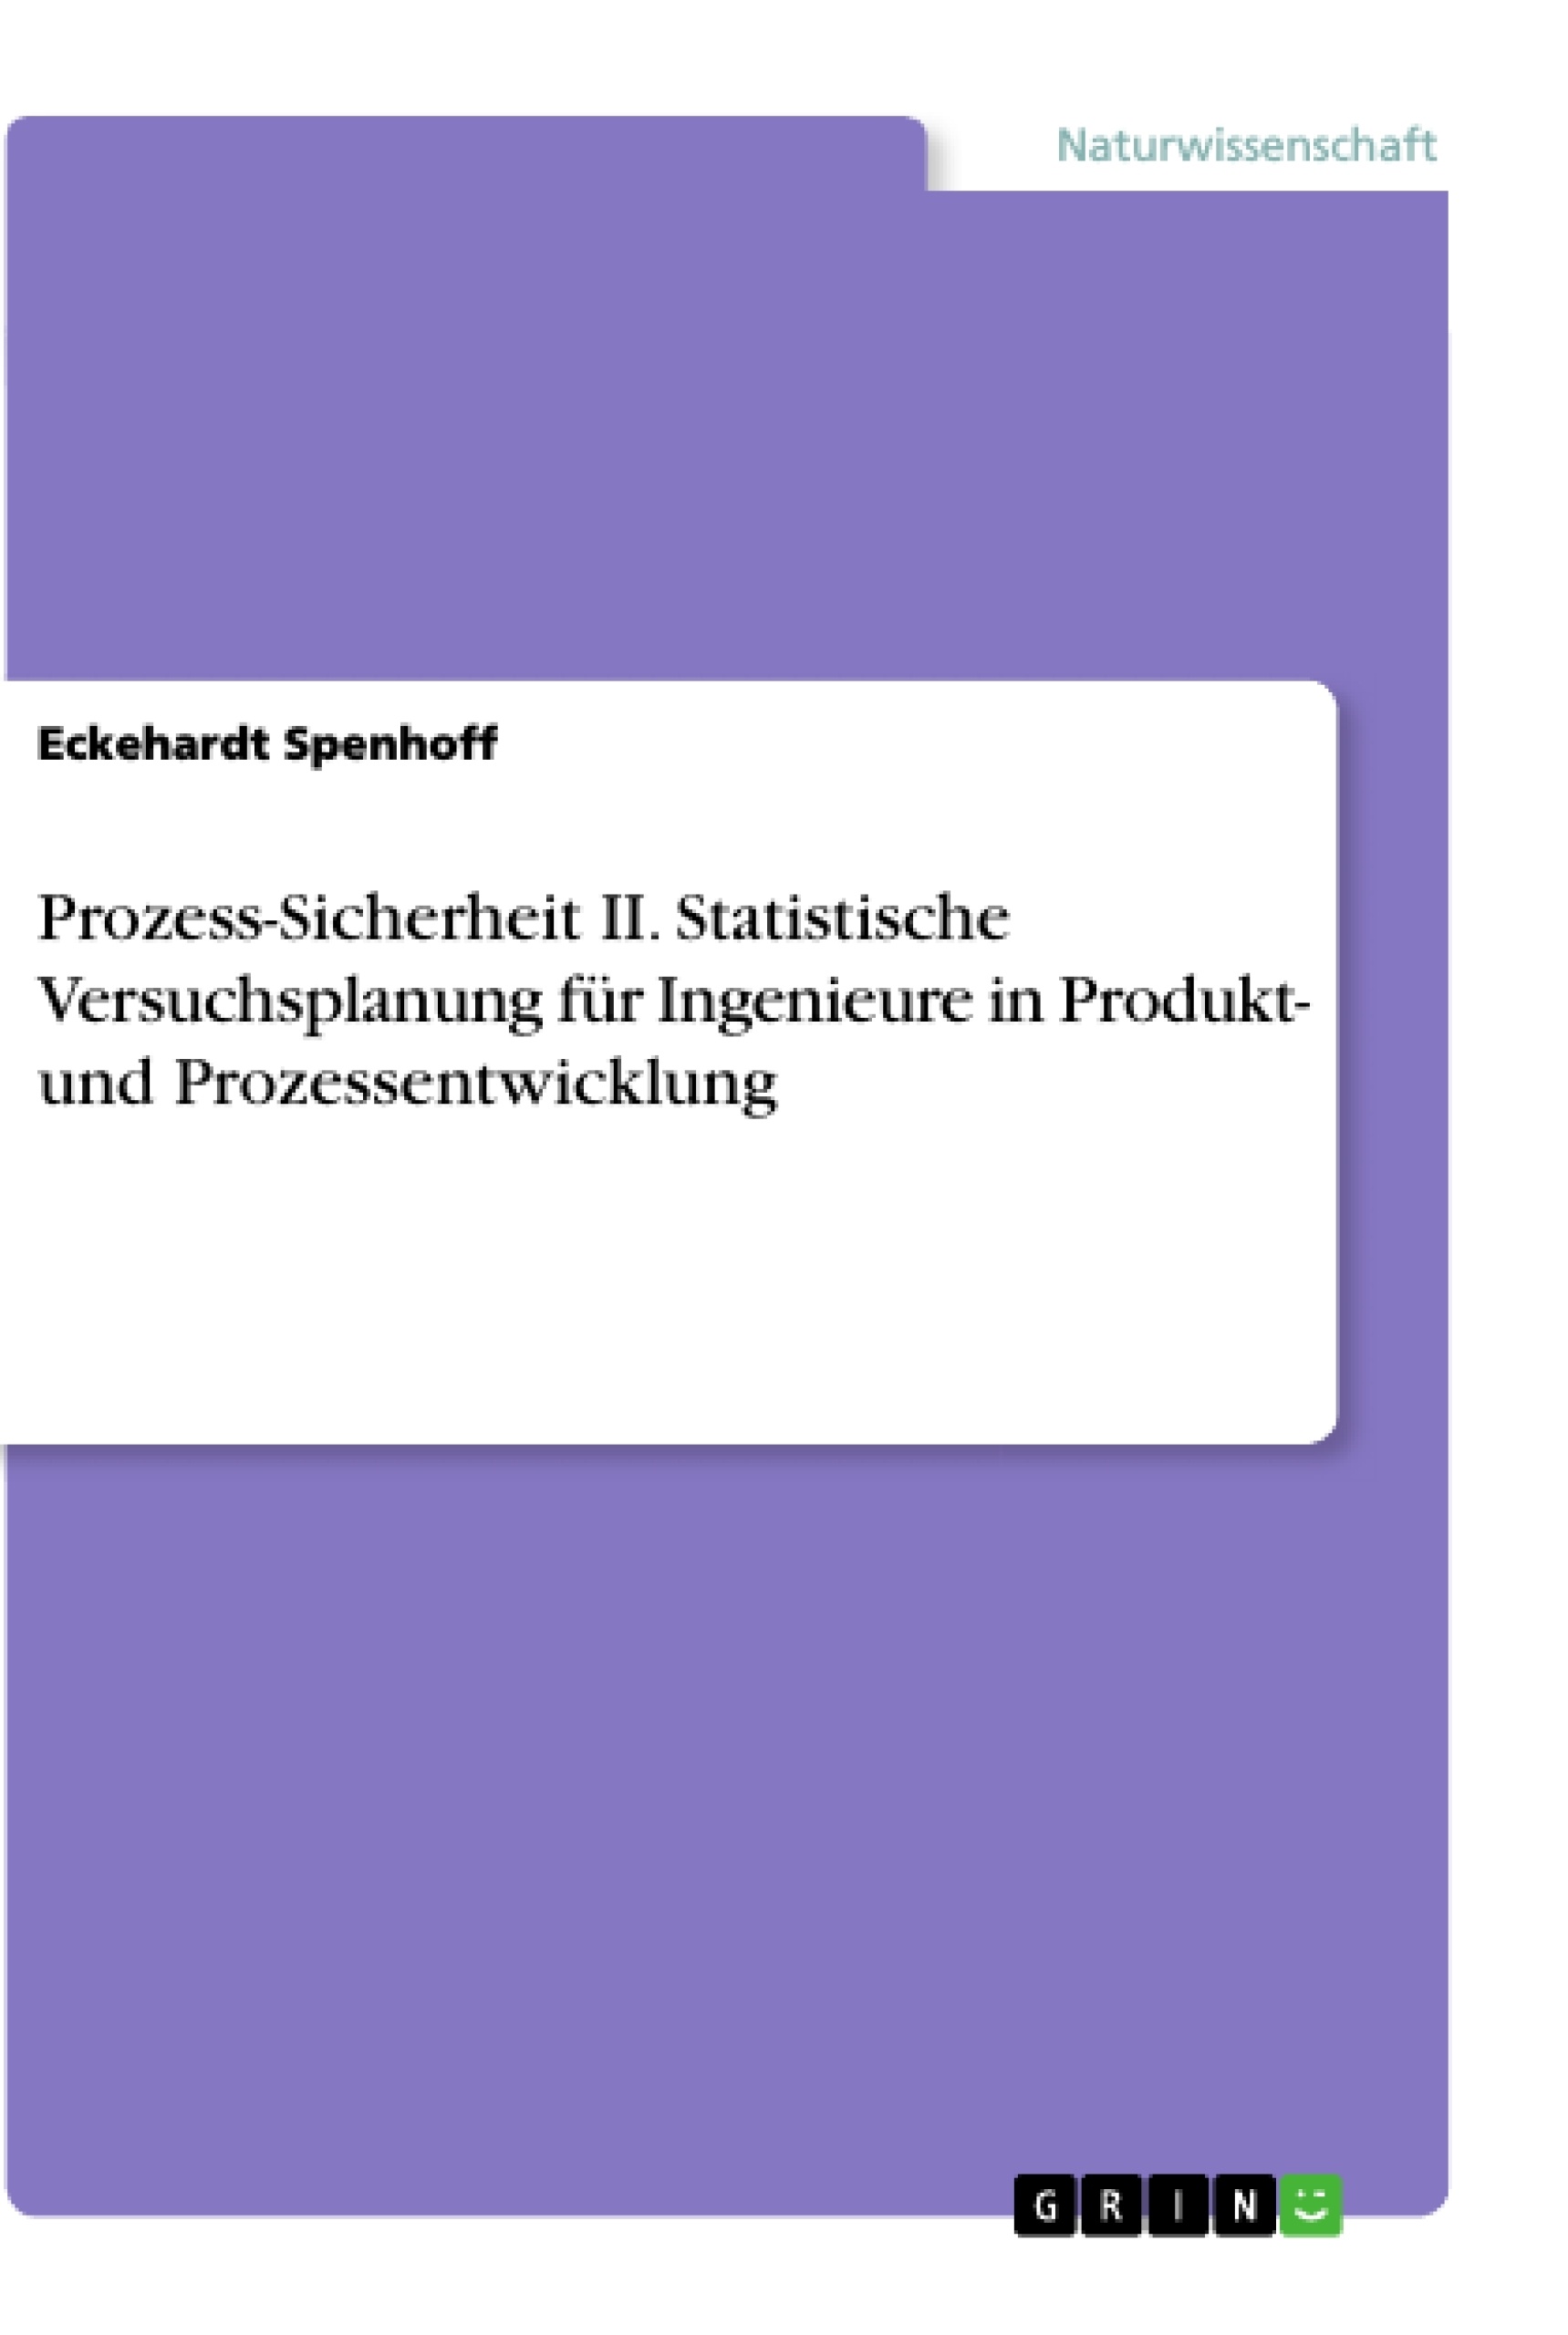 Titel: Prozess-Sicherheit II. Statistische Versuchsplanung für Ingenieure in Produkt- und Prozessentwicklung